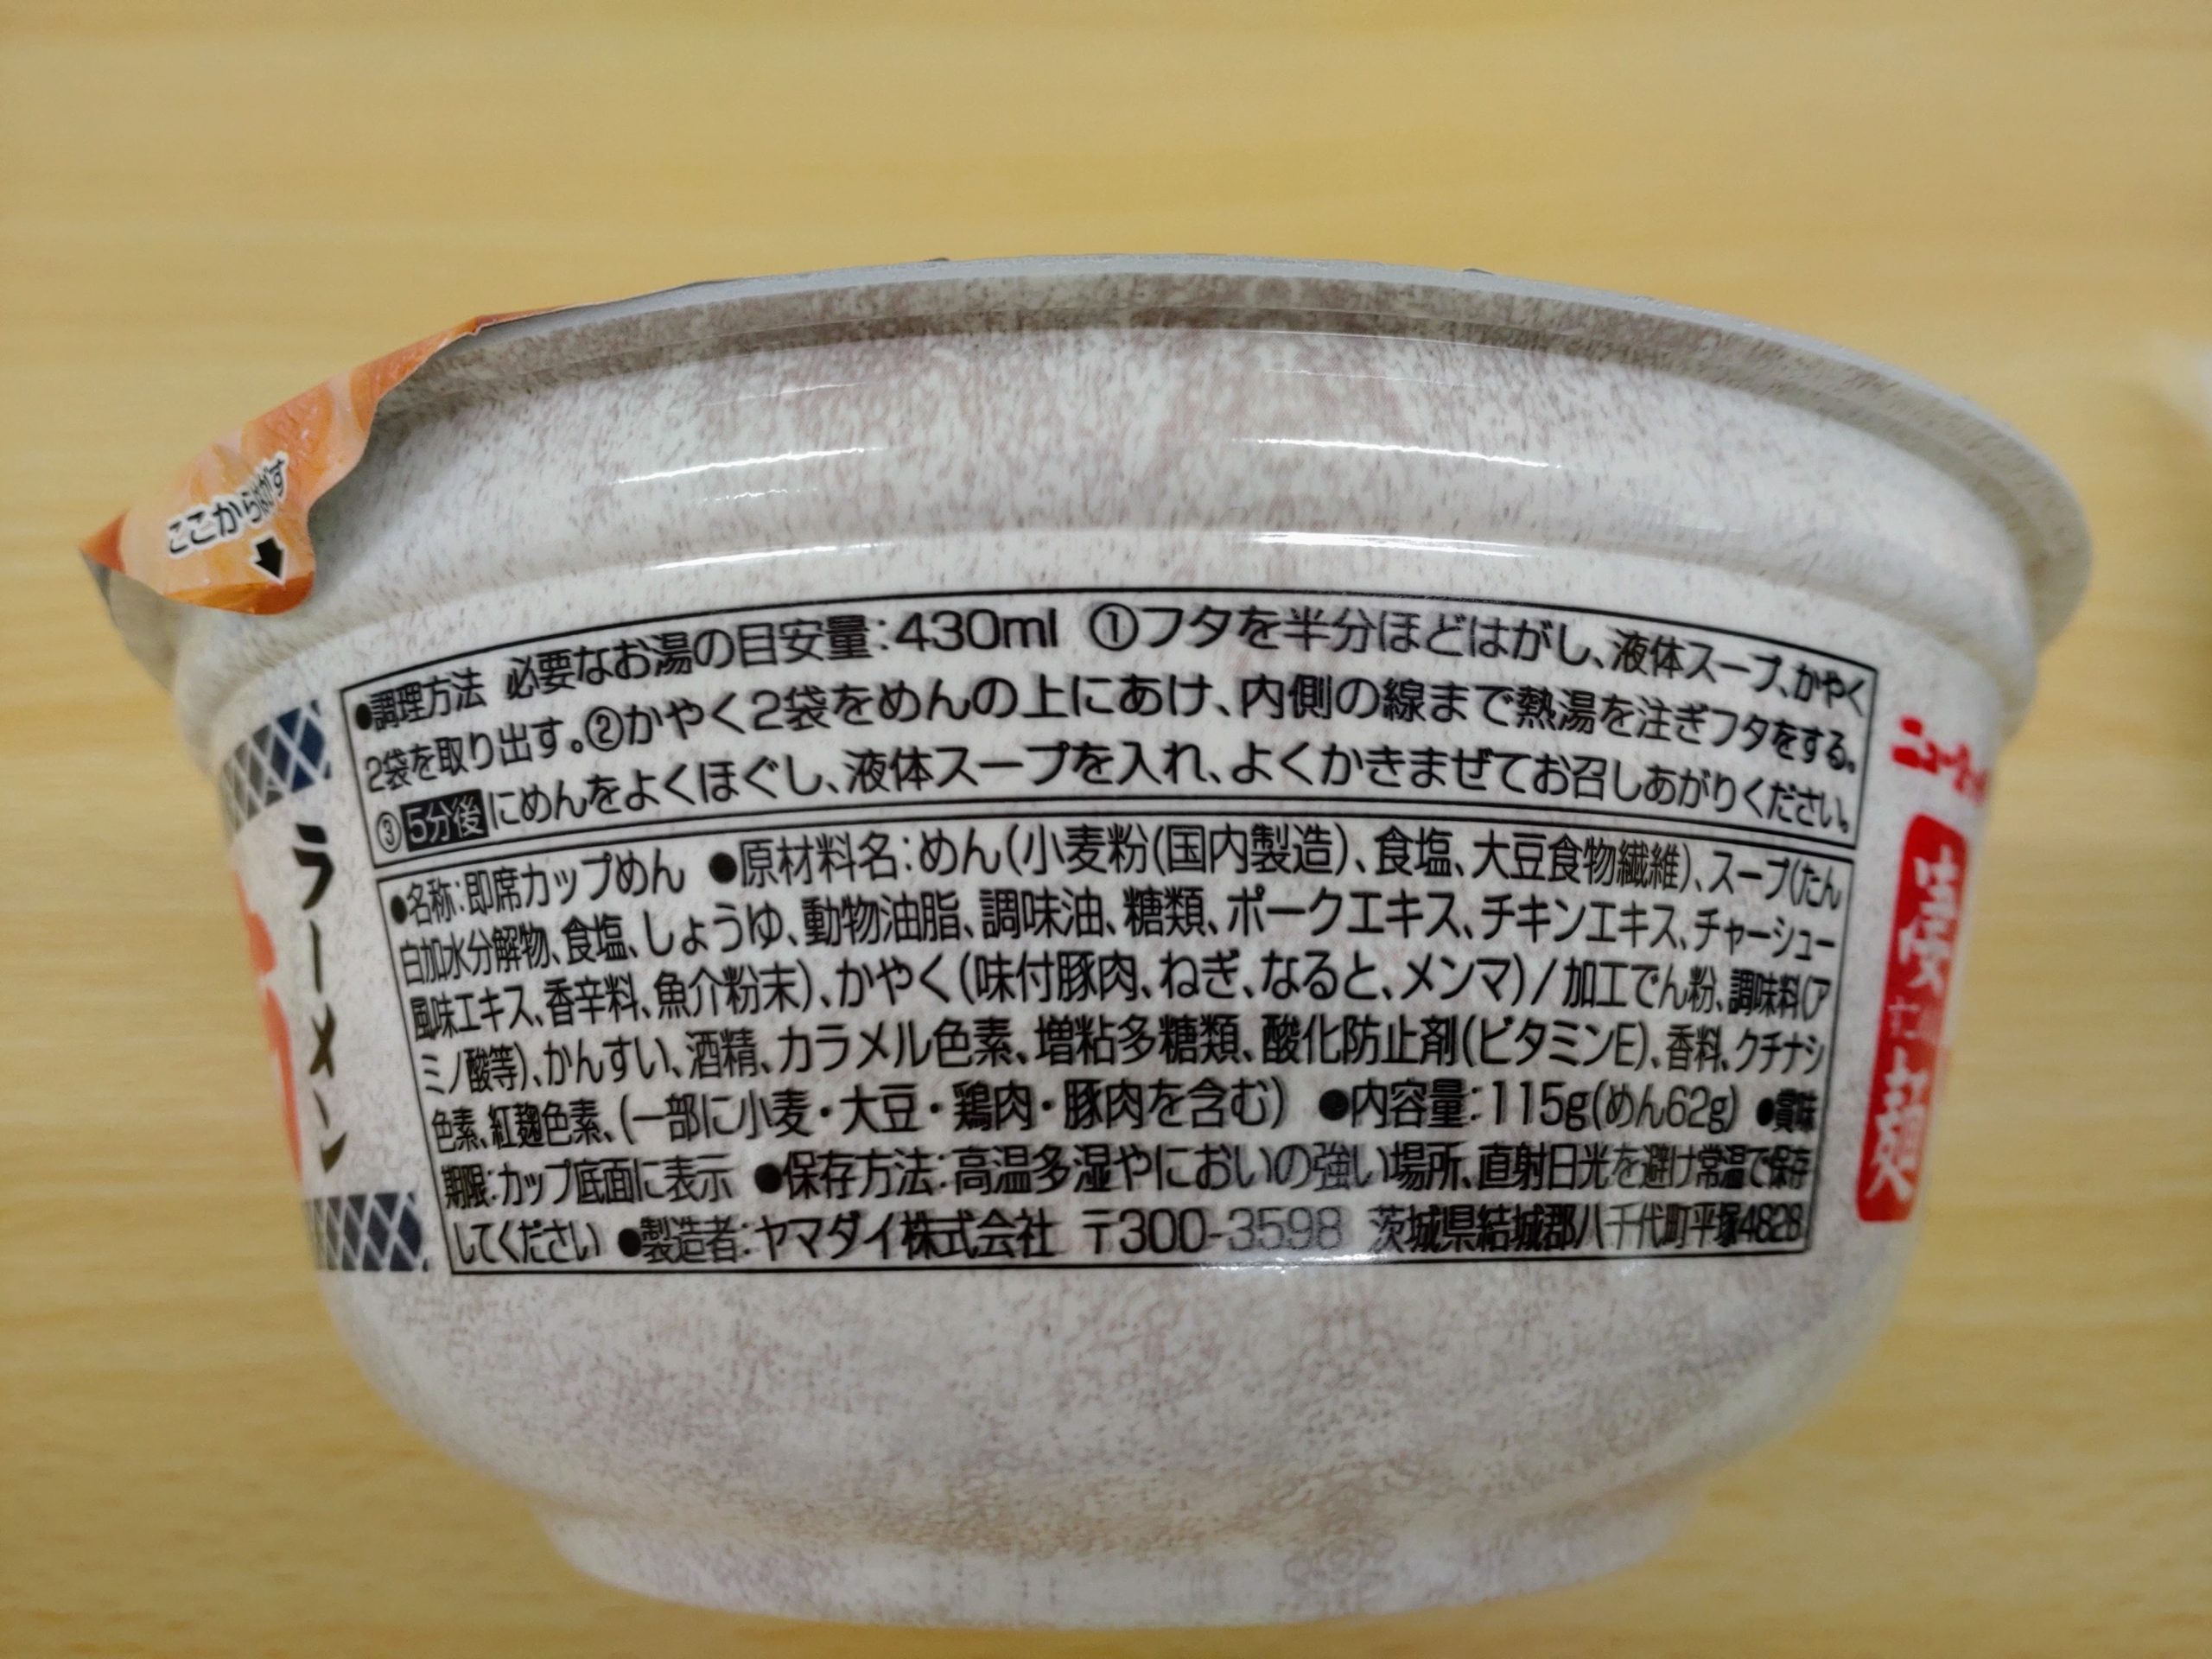 凄麺 喜多方ラーメンの原材料名と内容量